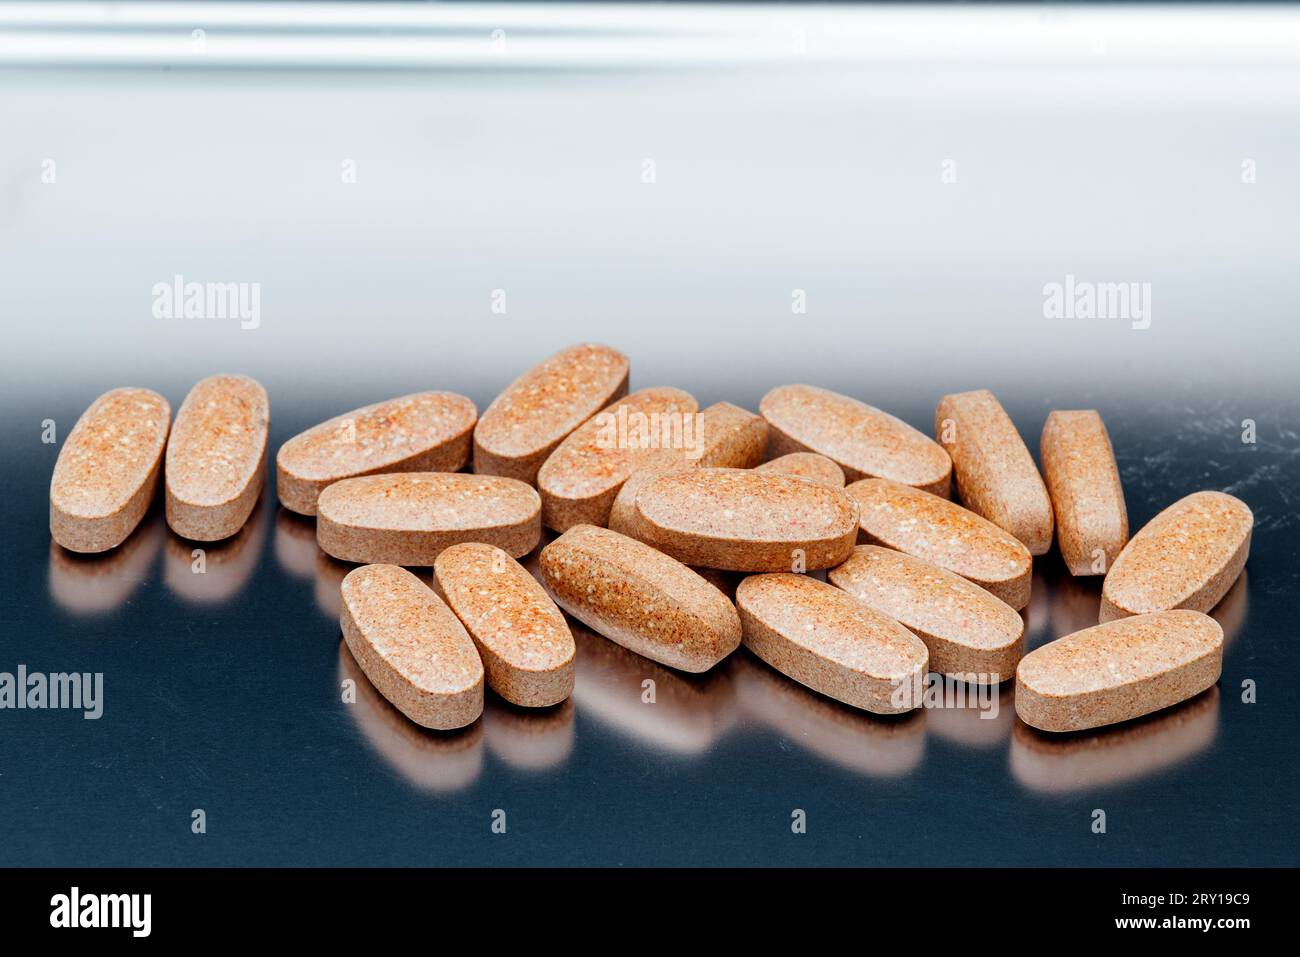 pilules et vitamines sur un plateau en acier inoxydable Banque D'Images